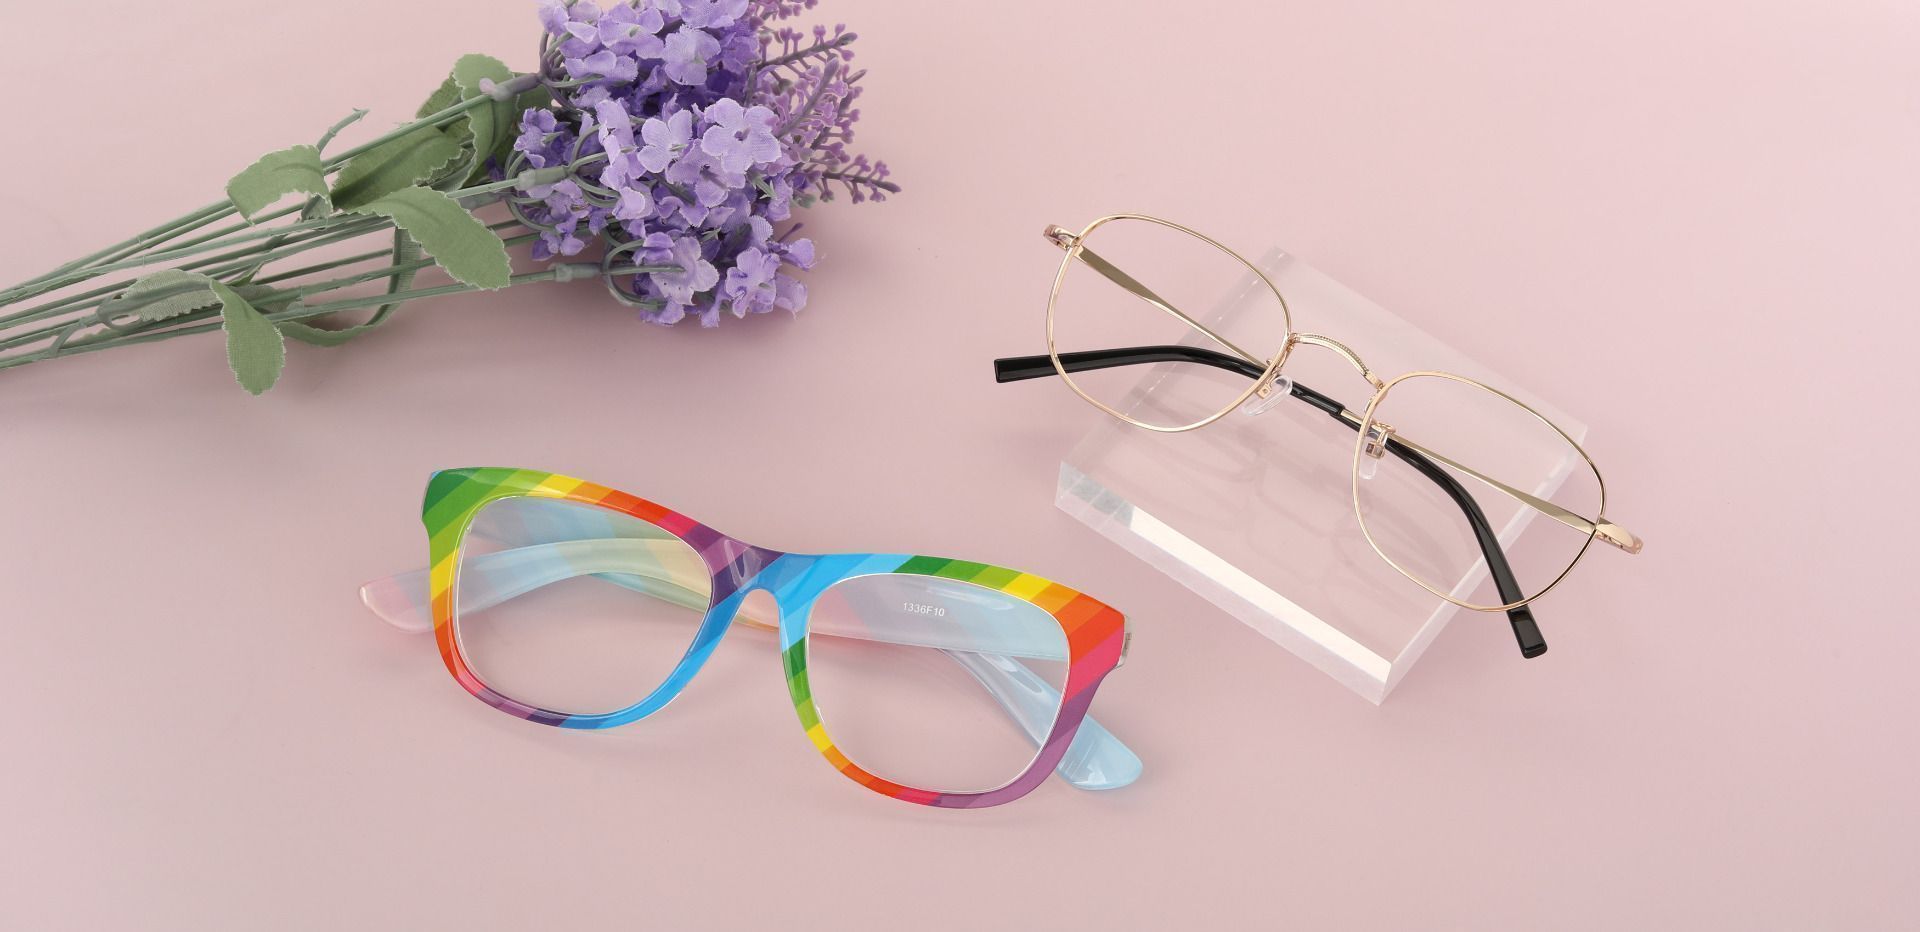 Spectrum Classic Square Prescription Glasses - Two